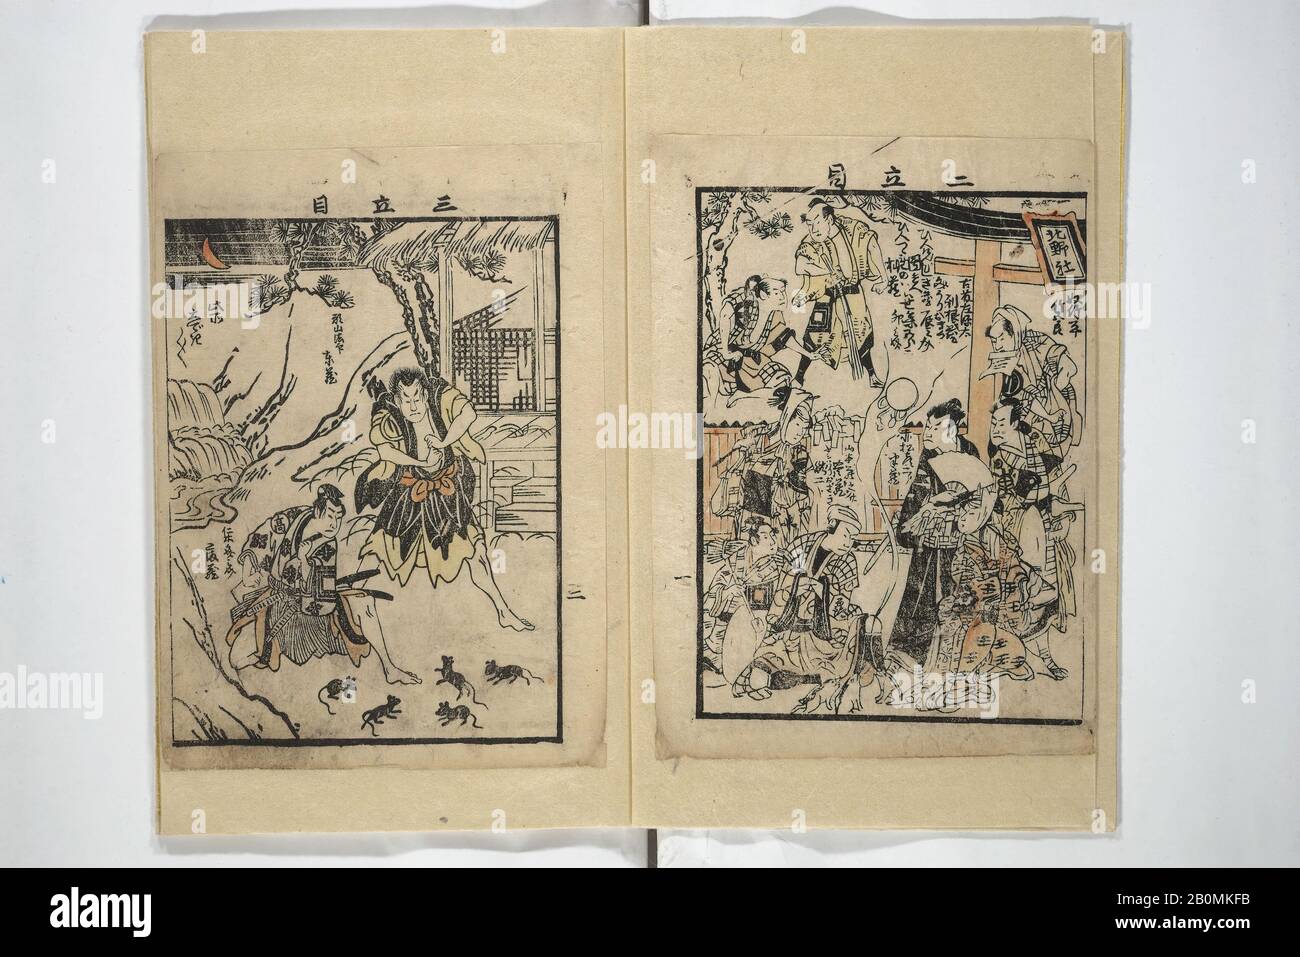 Artista no identificado, Libro de imágenes con sinopsis de Obras de Teatro  (Ehon banzuke) para Actuaciones en el Teatro Nakamura en 1794, Japón,  período Edo (1615–1868), Artista no identificado japonés, (escuela Torii),